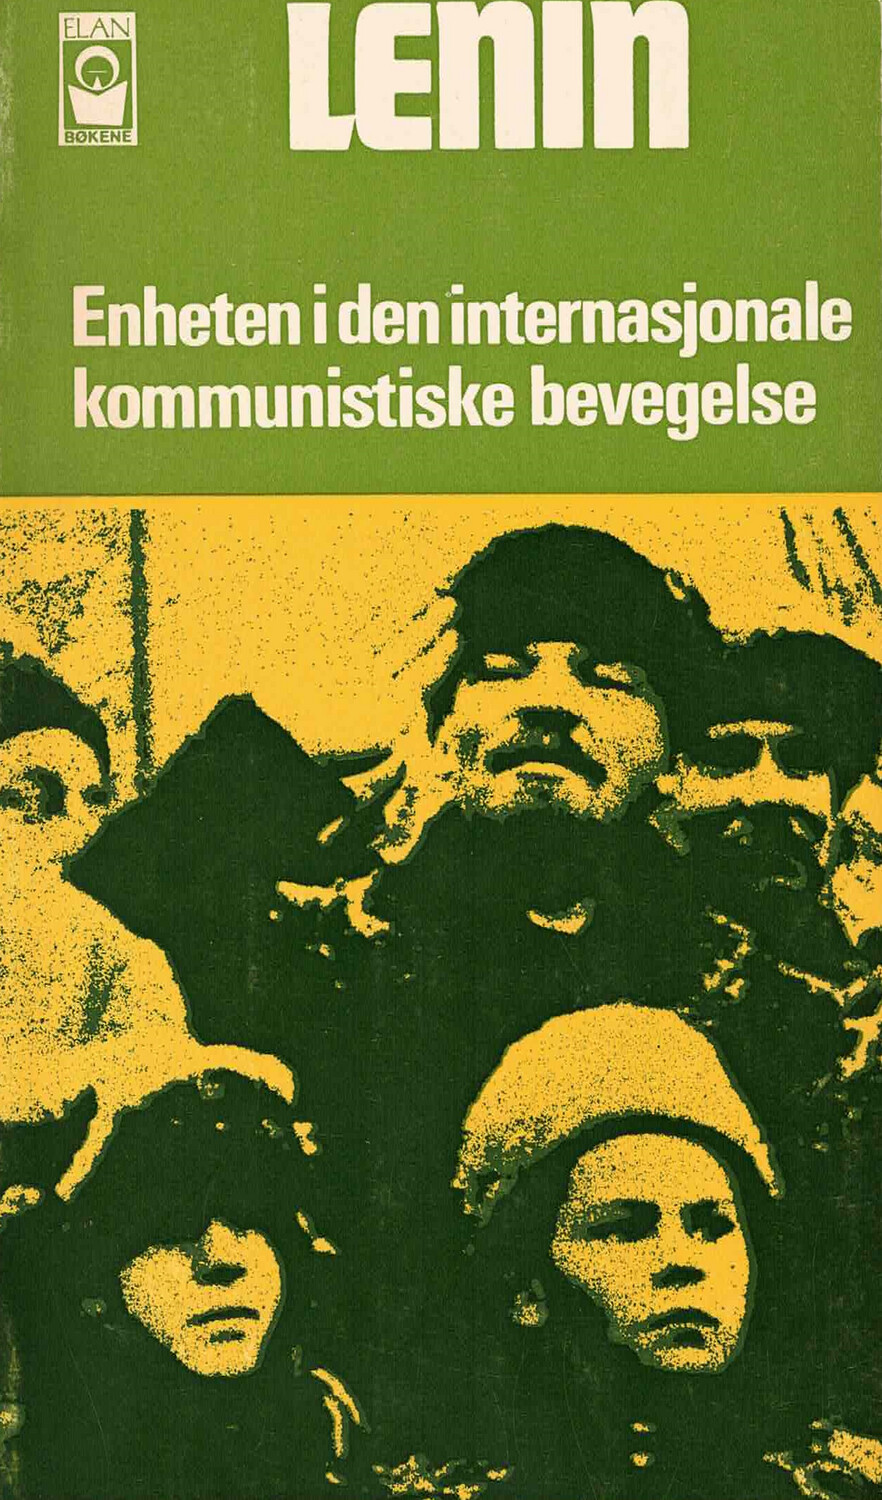 Lenin: Enheten i den internasjonale kommunistiske bevegelse